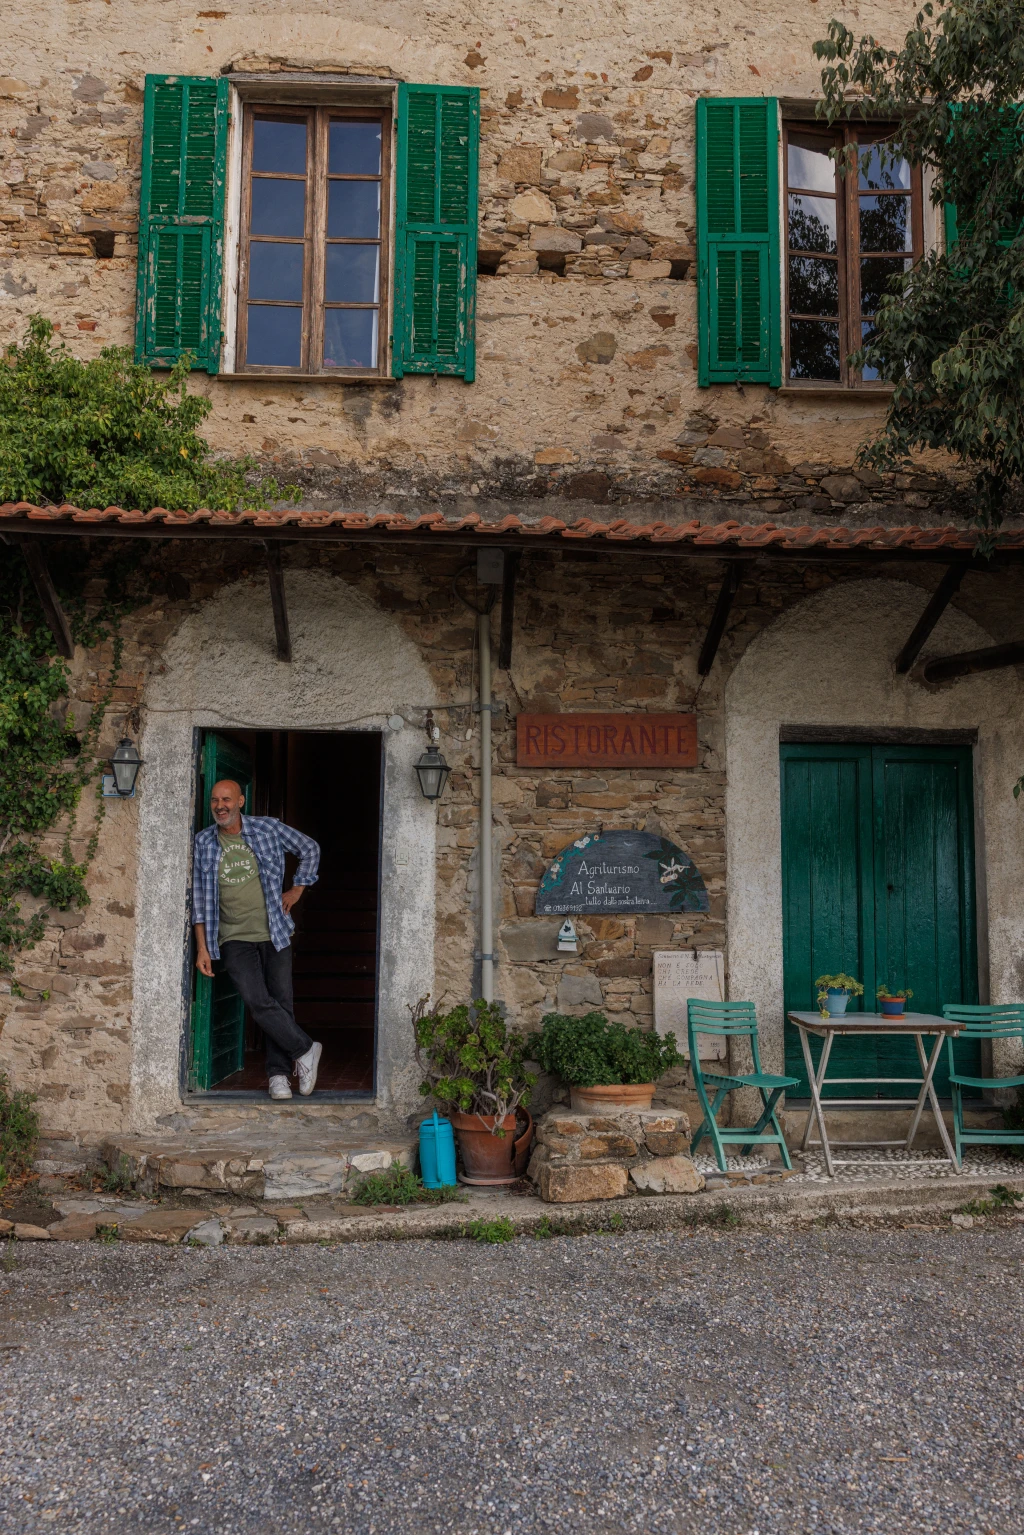 Ristorante Al Santuario in Montegrazie, Liguria. Photo by @emmapeijenburg